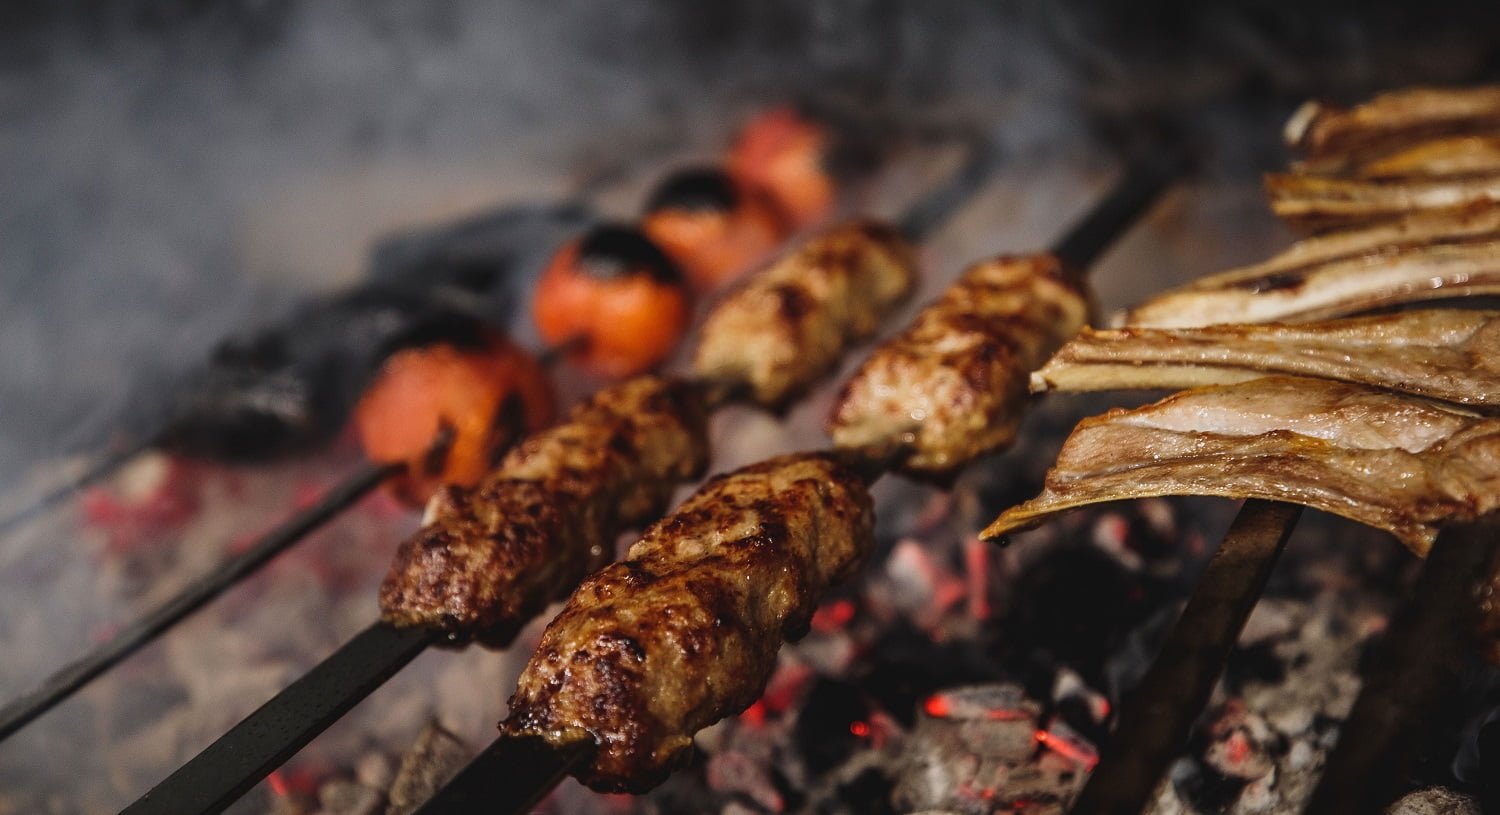 close up view of lula kebab on metal skewers on dark background